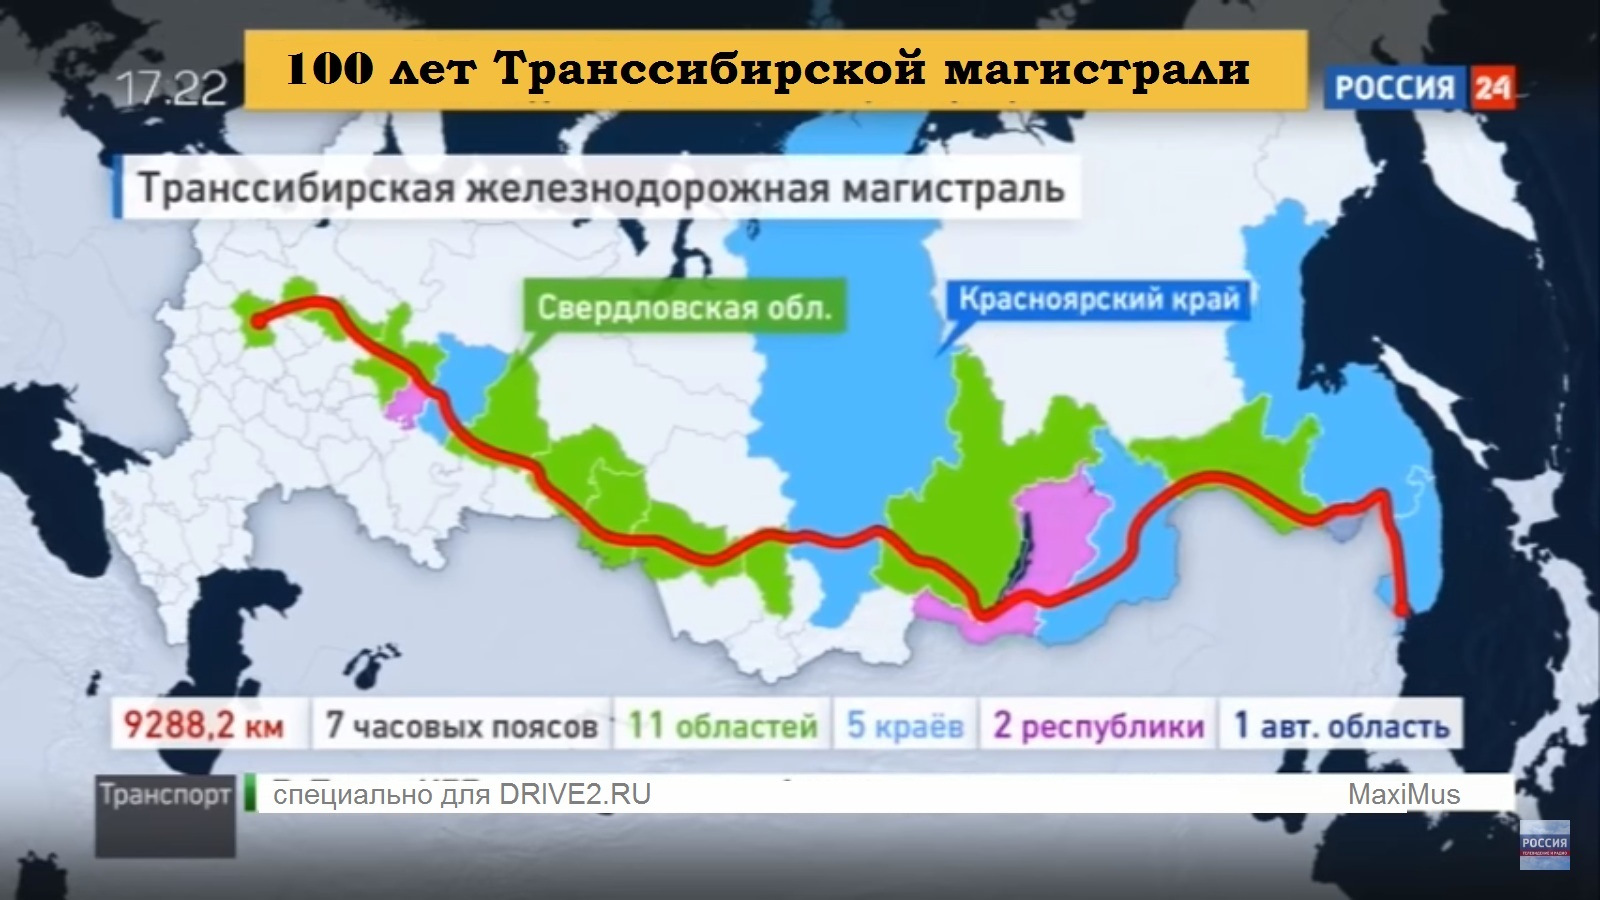 Через какие города проходит магистраль. Транссиби́рская Железнодорожная магистраль карта. Транссибирская Железнодорожная магистраль на карте. Что такое Транссибирская магистраль на карте России по городам. Транссибирская магистраль Дальний Восток.